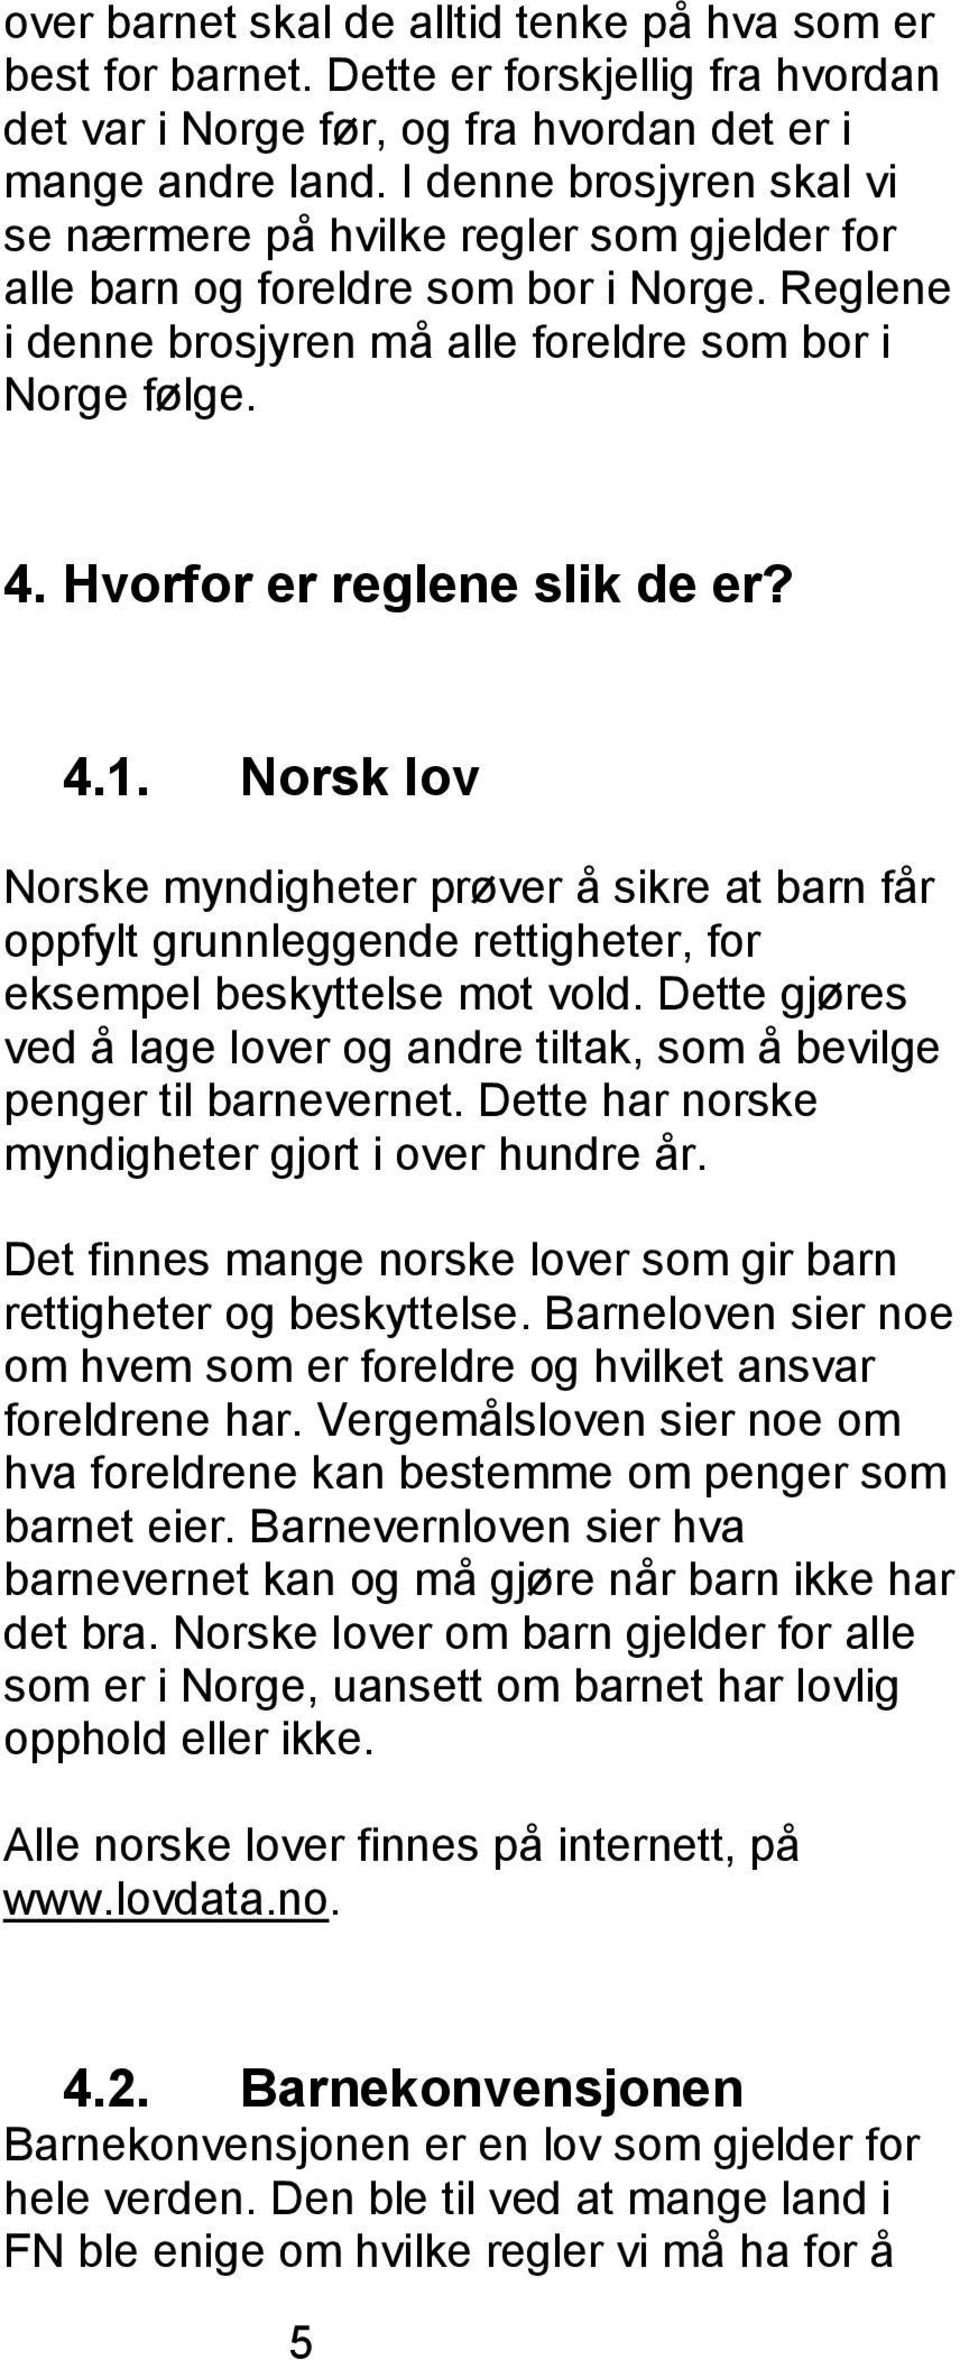 Hvorfor er reglene slik de er? 4.1. Norsk lov Norske myndigheter prøver å sikre at barn får oppfylt grunnleggende rettigheter, for eksempel beskyttelse mot vold.